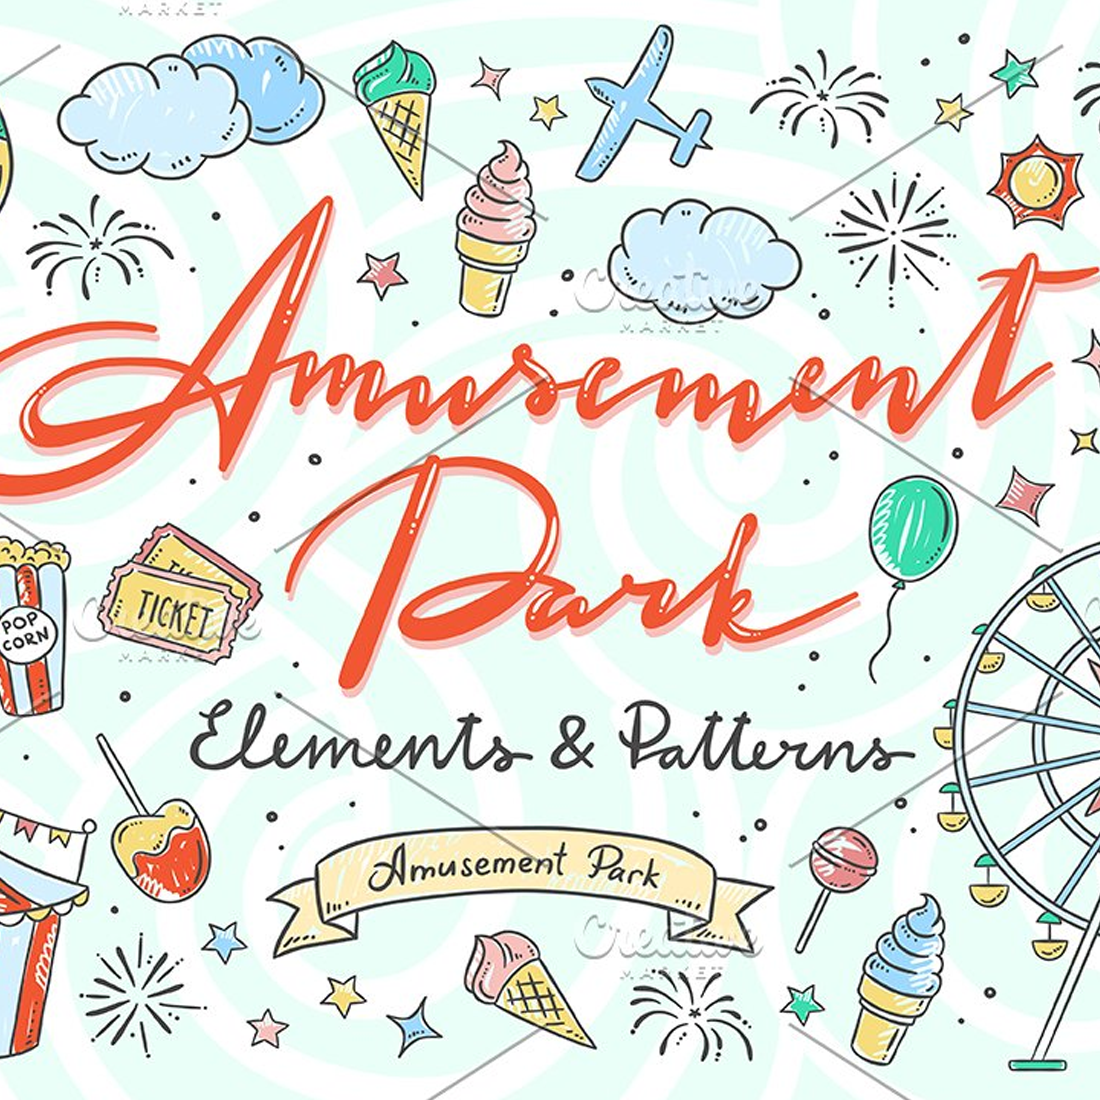 Images preview amusement park illustrations.